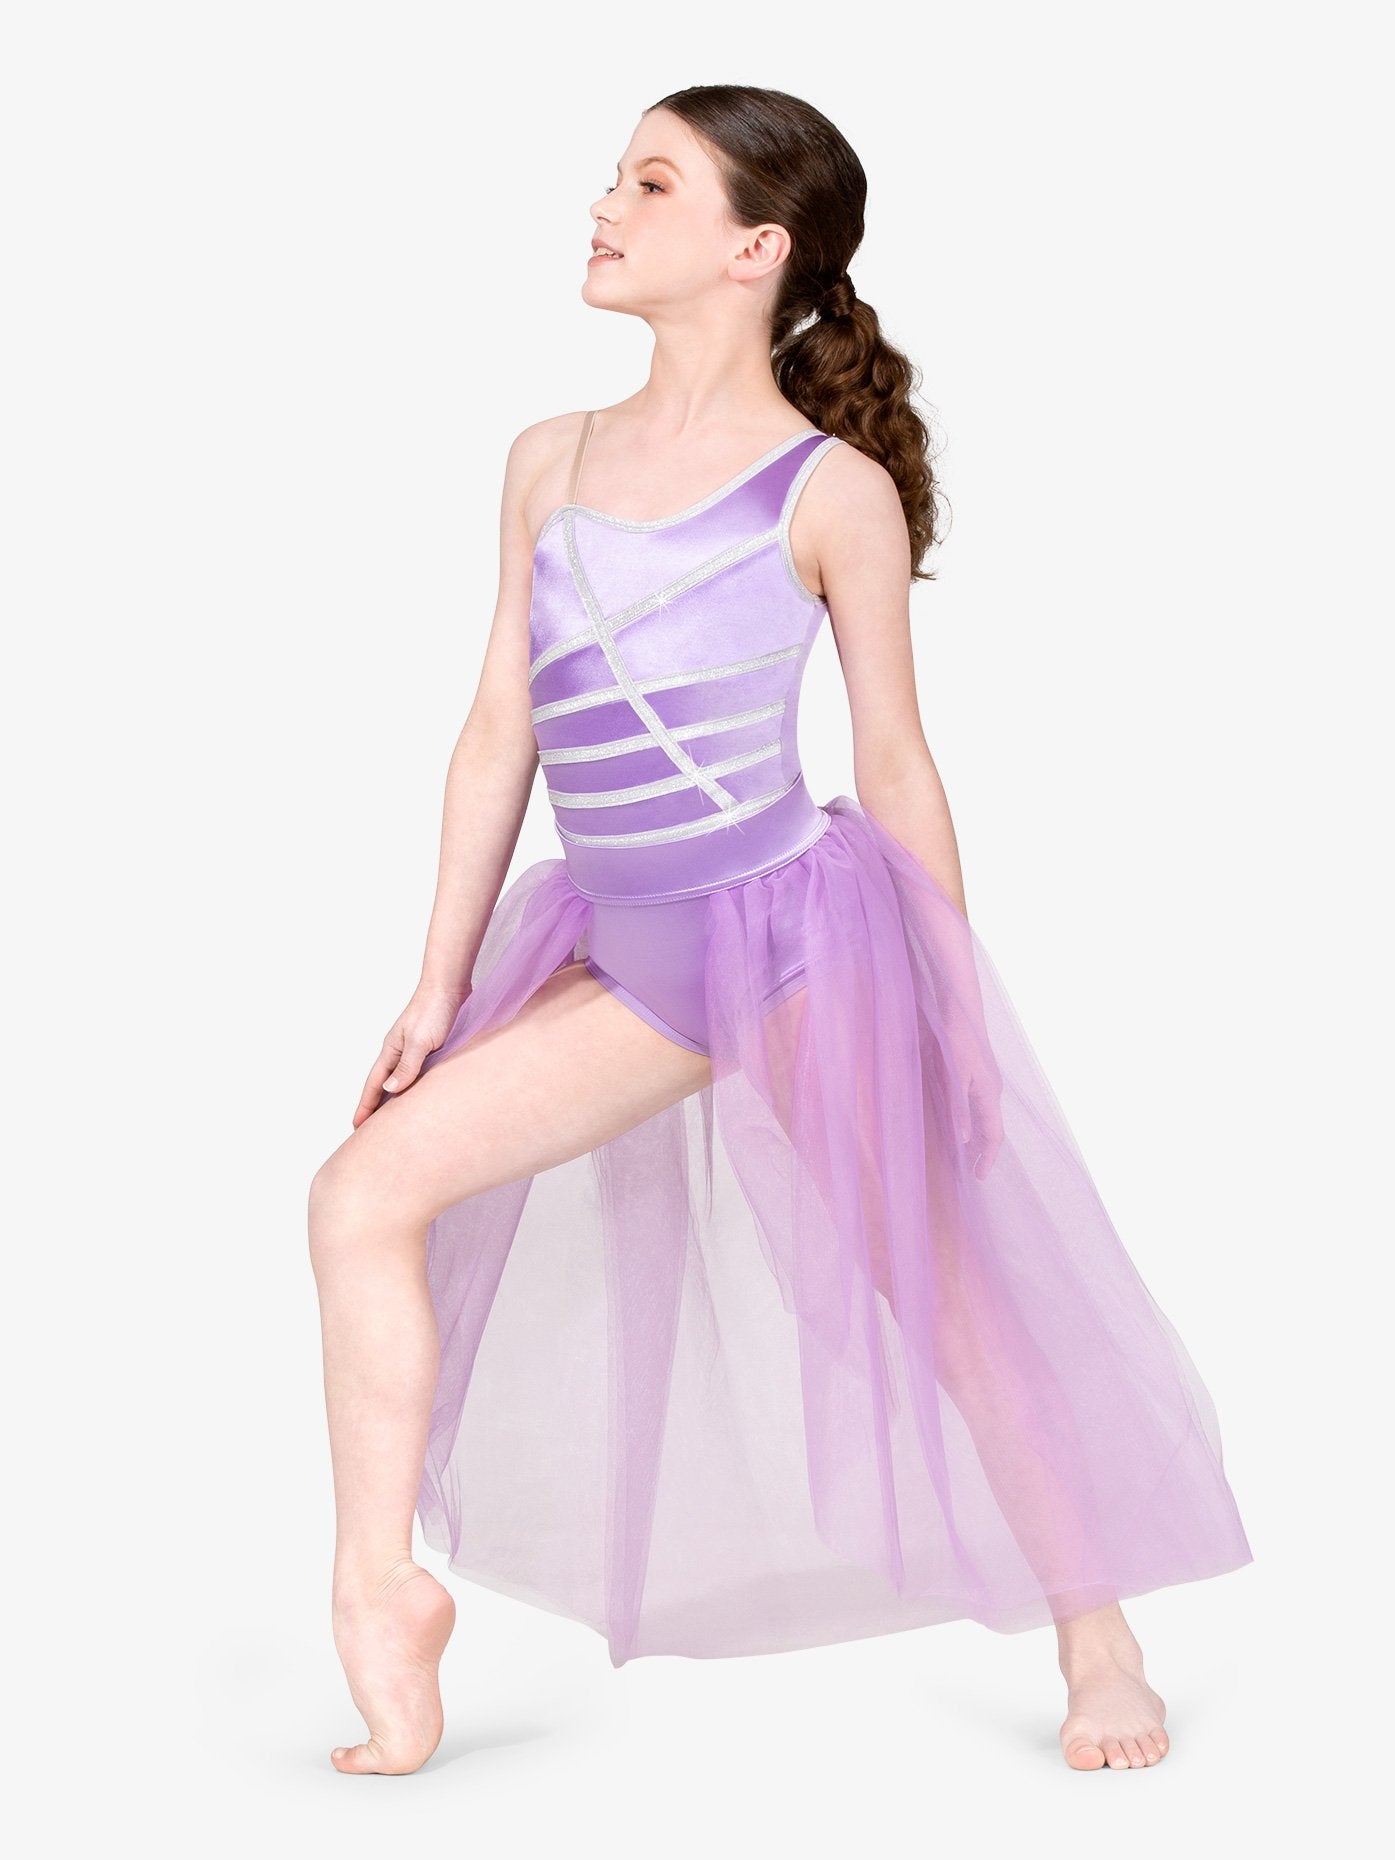 ダブルプラチナム オープンフロント パフォーマンススカート【子供】Double Platinum Girls Open Front Performance Skirt - Lilac